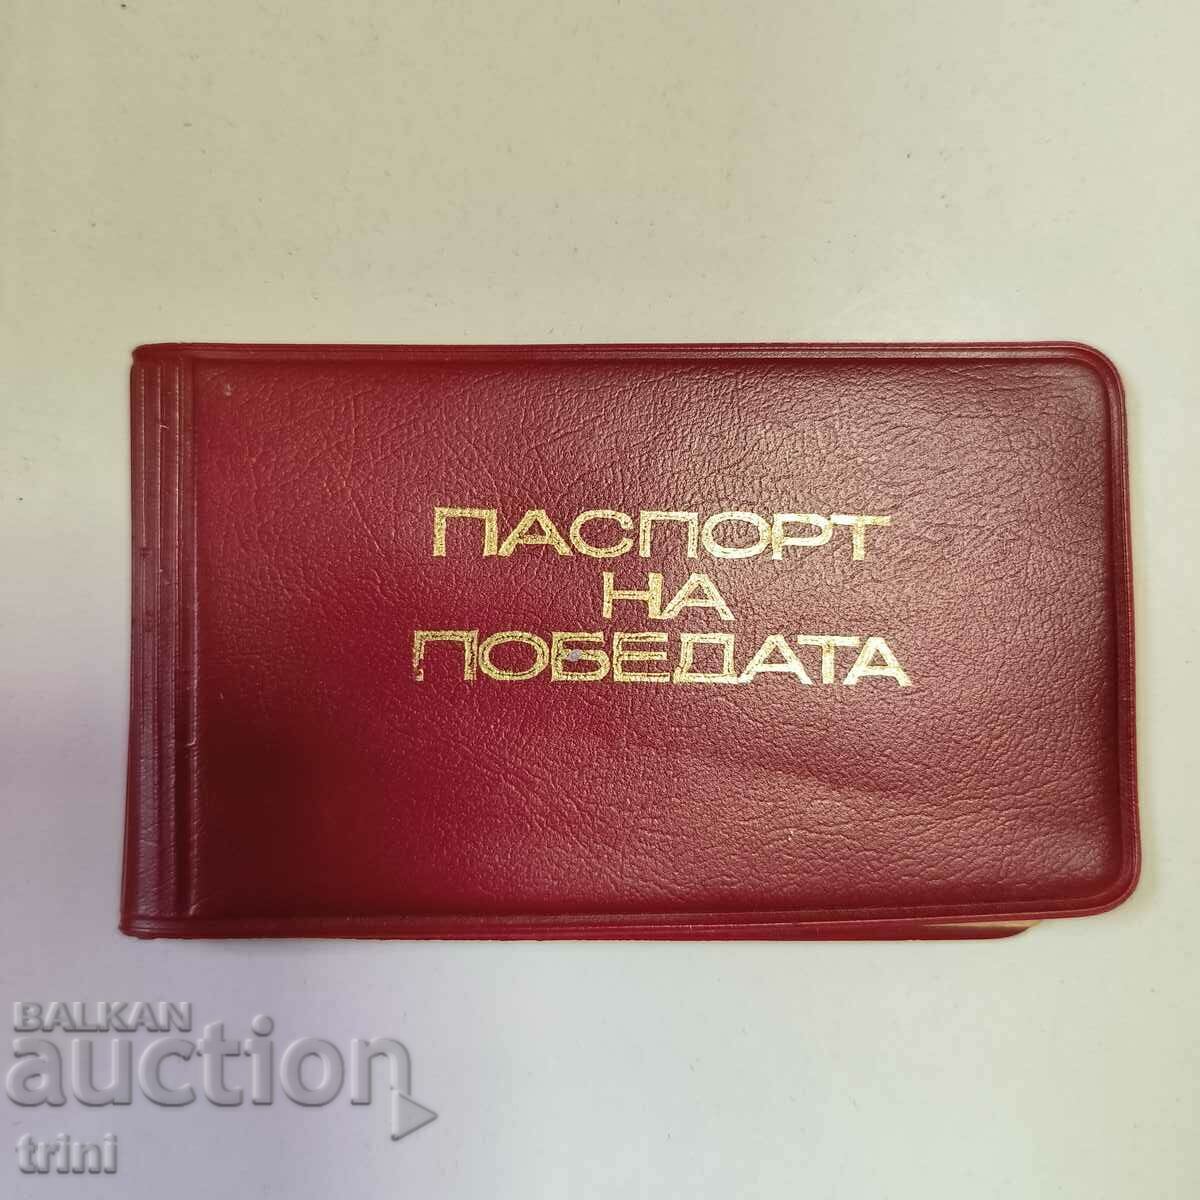 Pașaportul Victoriei - Certificat